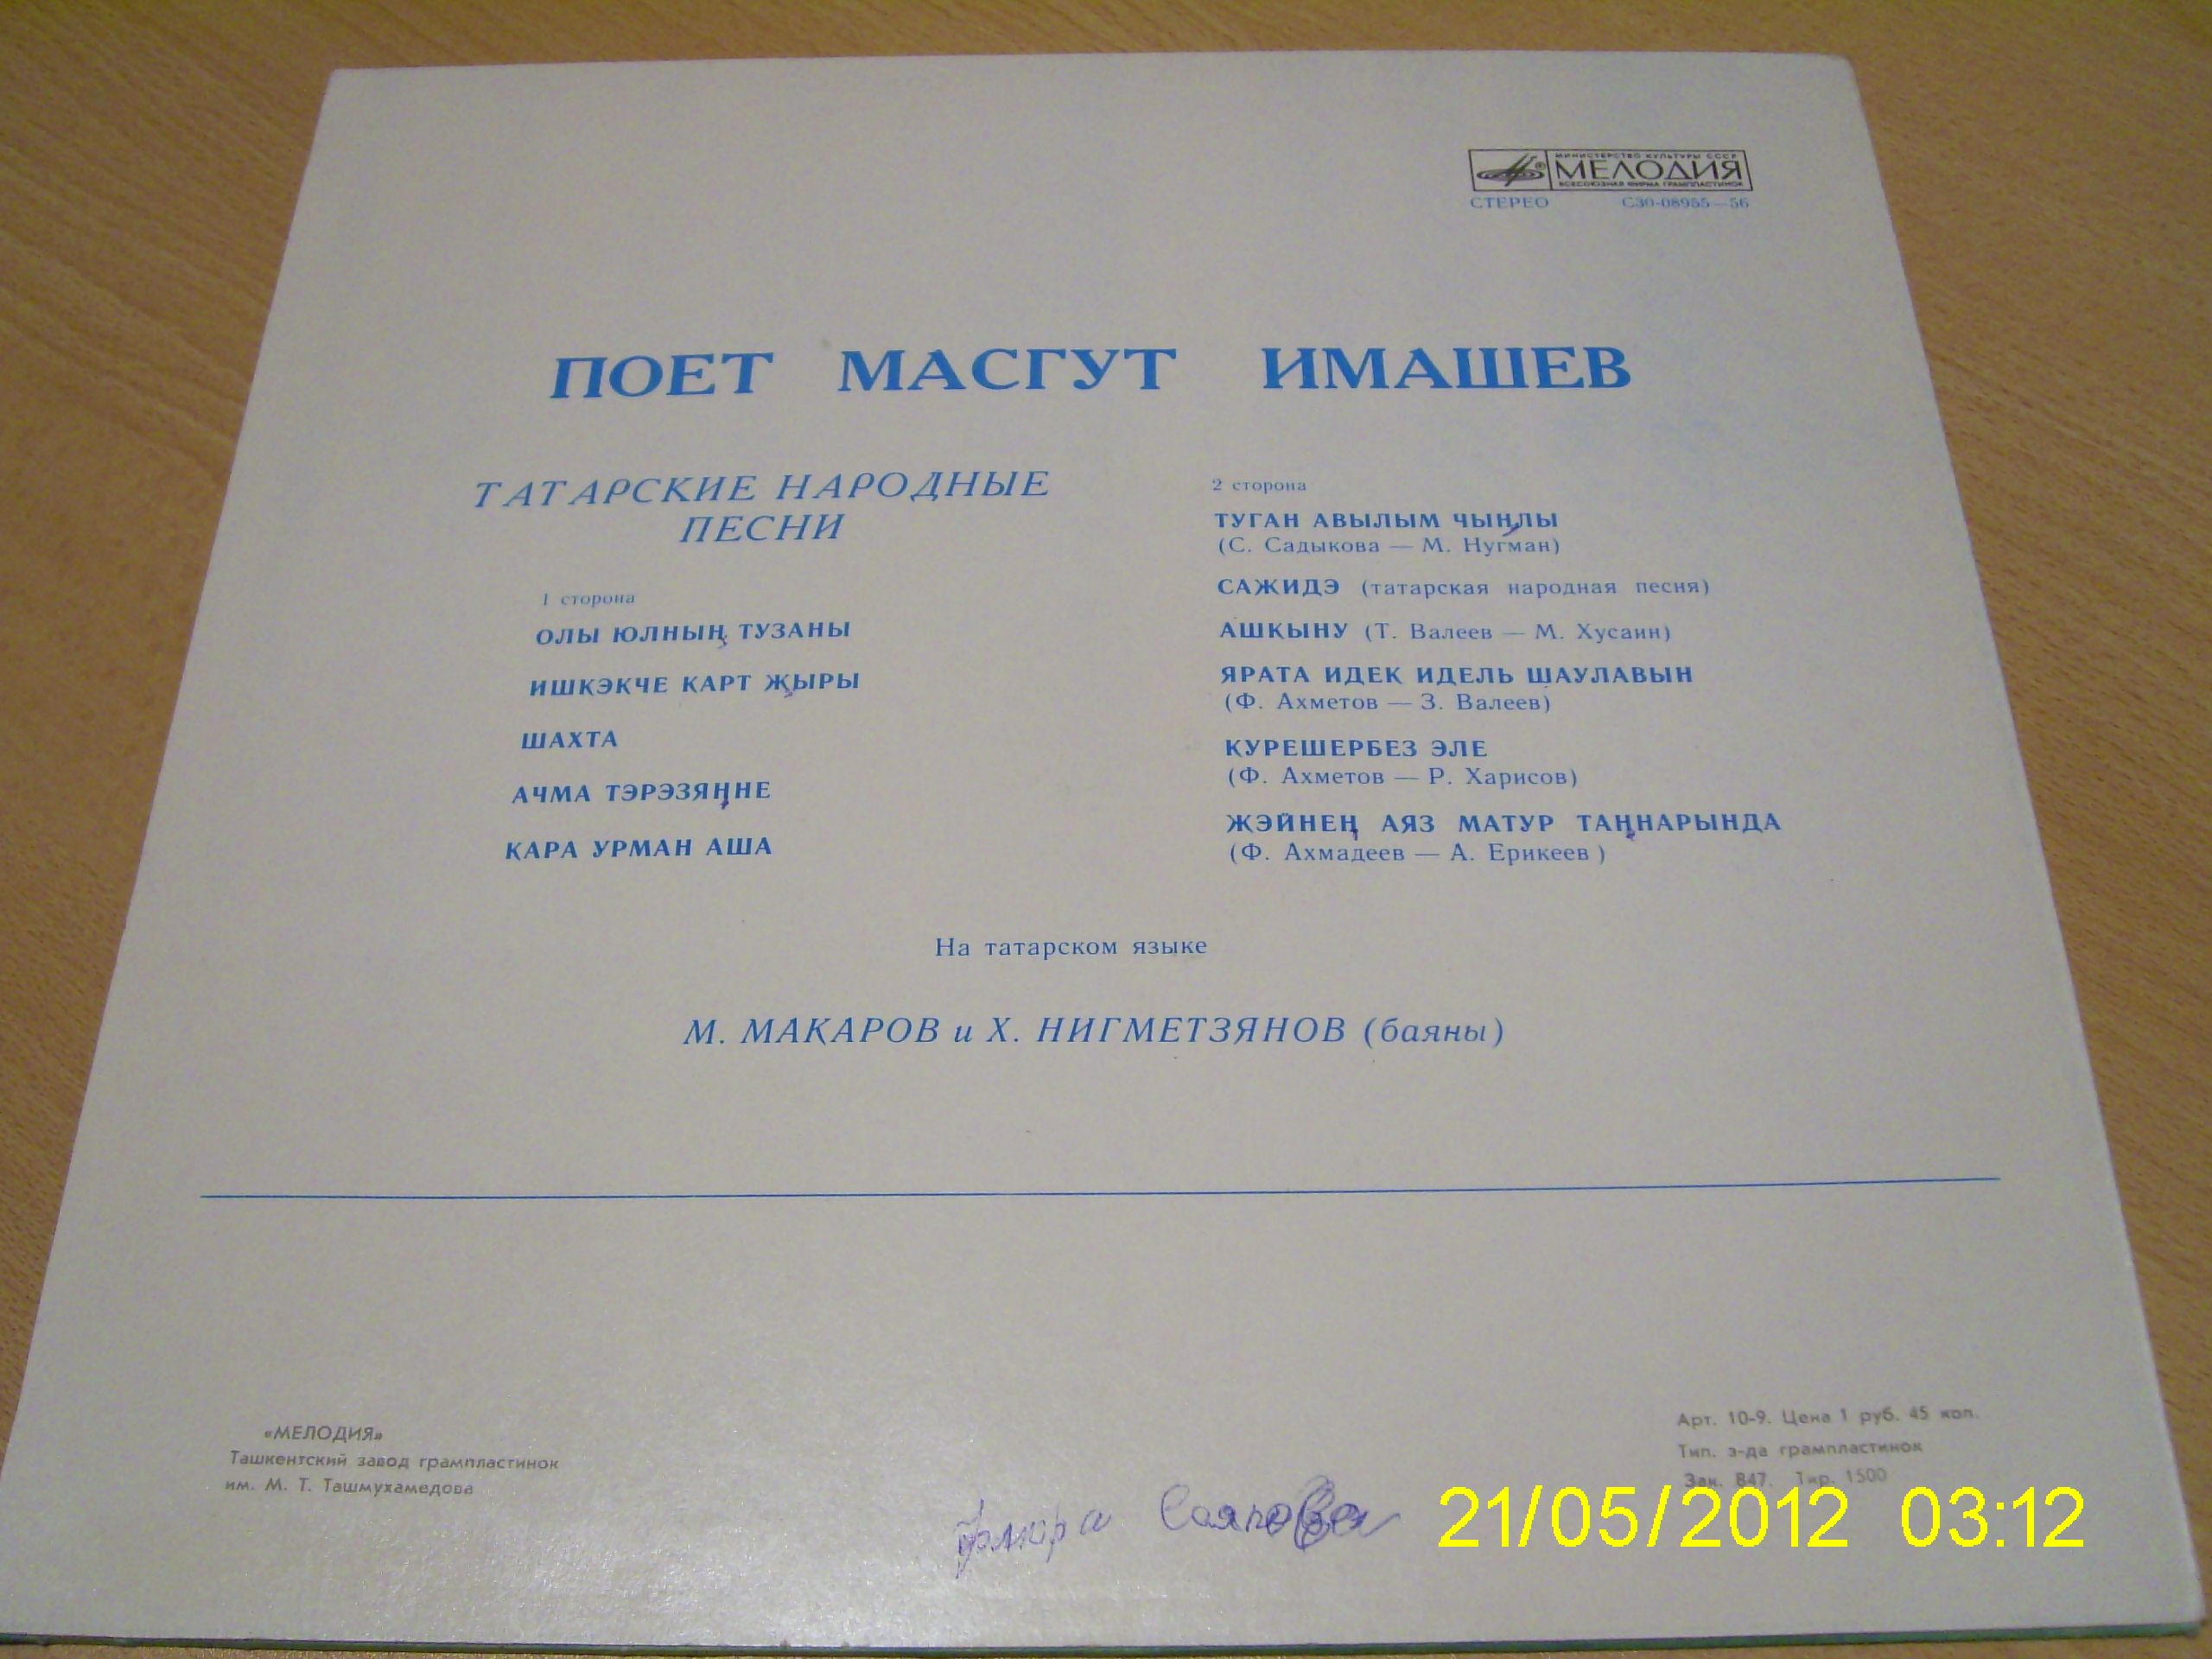 Маскут ИМАШЕВ: «Поёт Масгут Имашев» (на татарском языке)